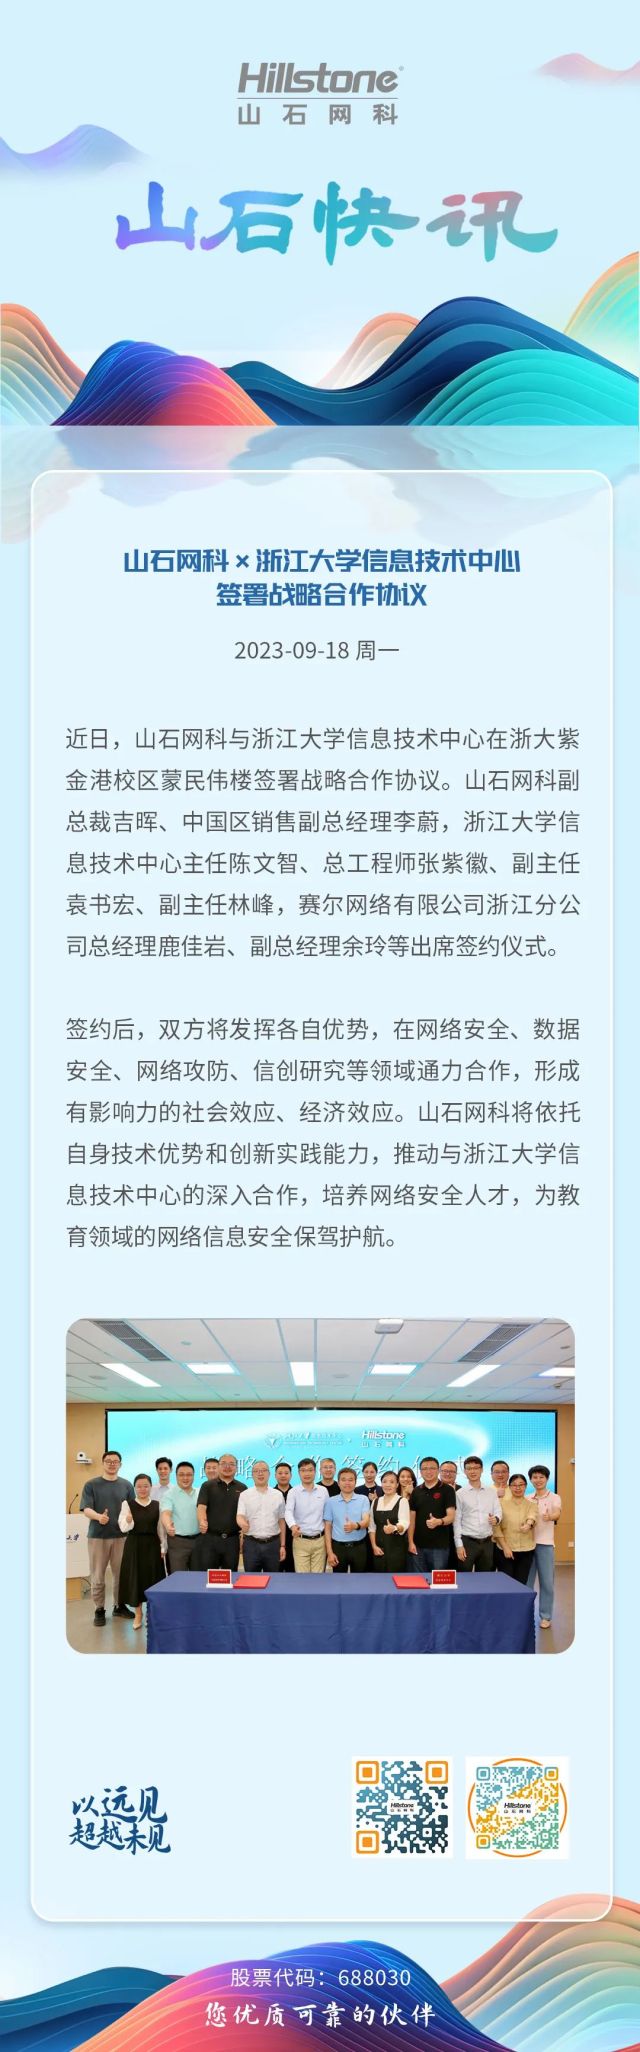 山石快讯丨山石网科×浙江大学信息技术中心 签署战略合作协议